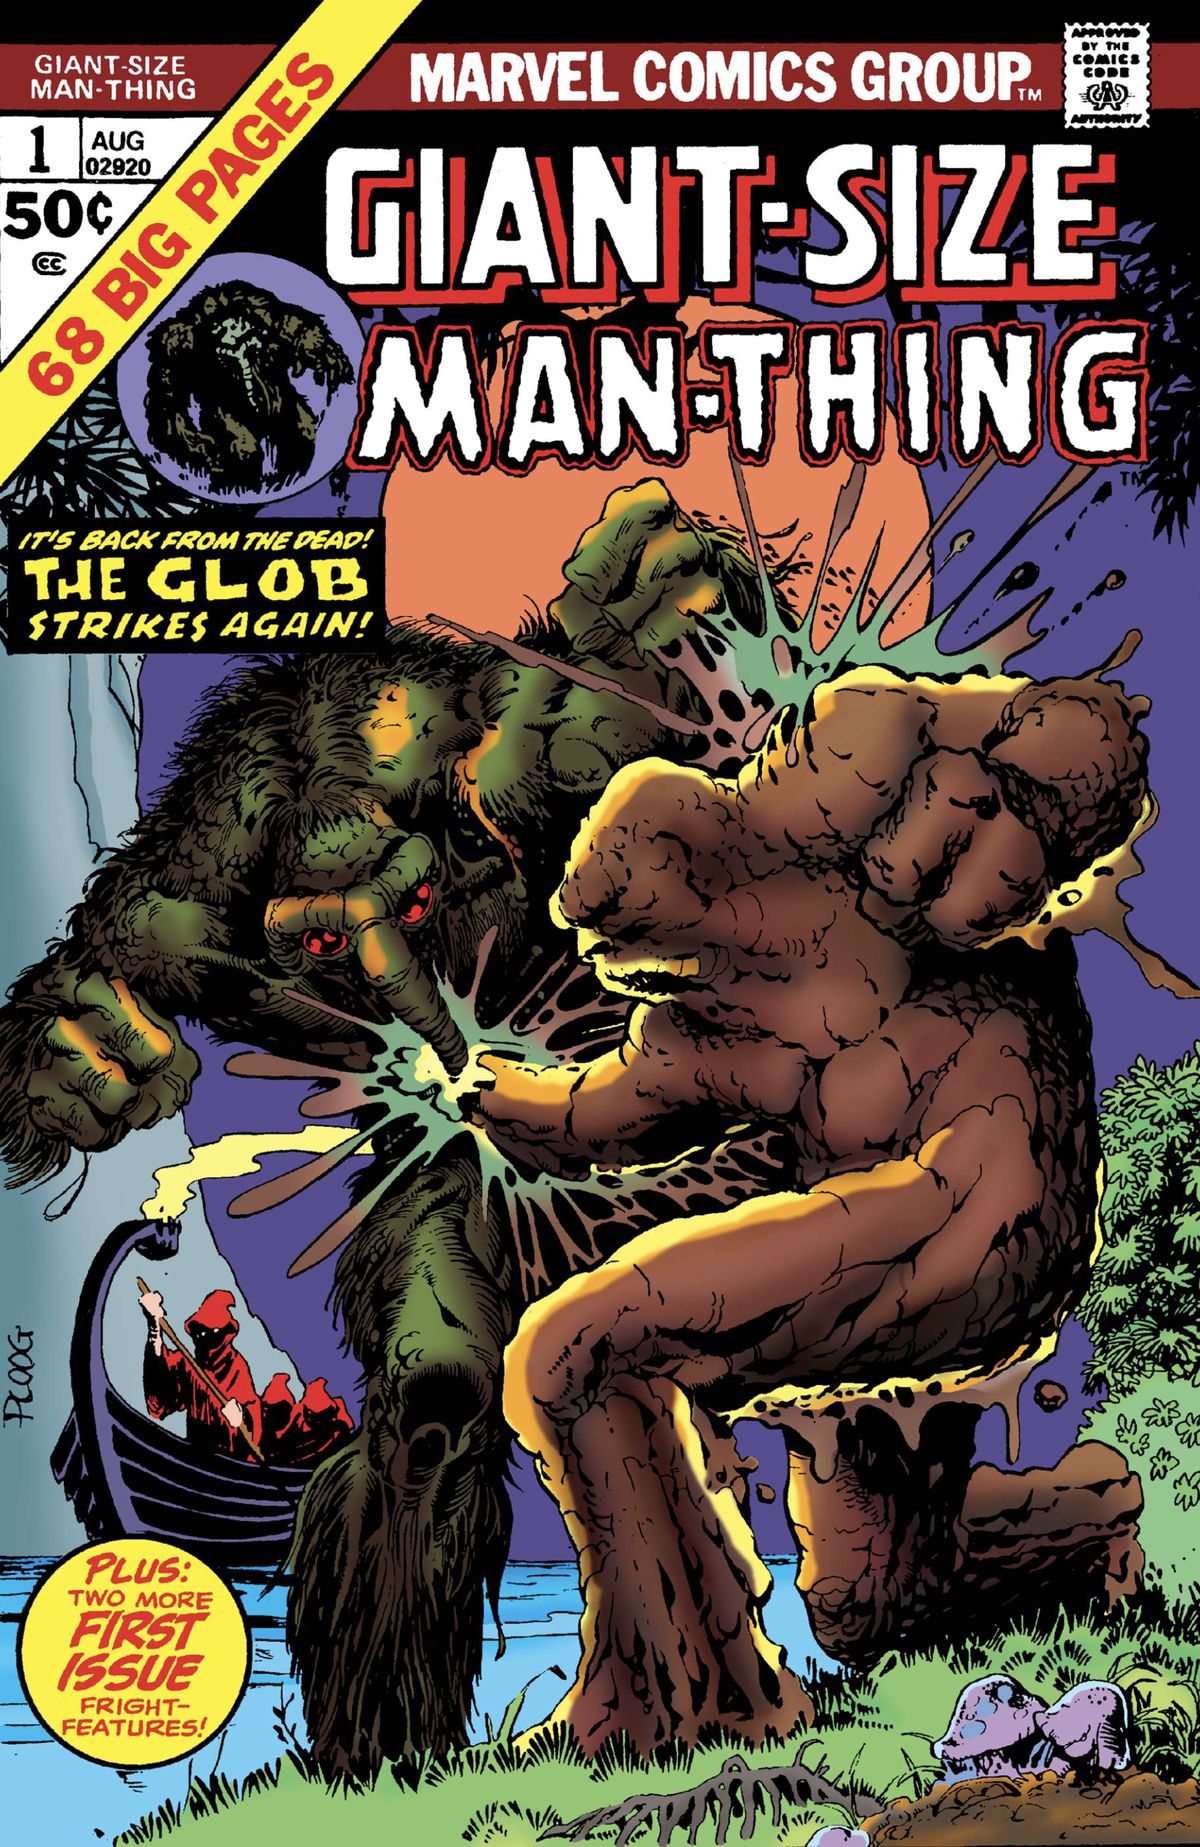 Man-Thing e Glob combattono in una palude sulla copertina del numero di 68 pagine, Giant-Size Man-Thing # 1 (1974).